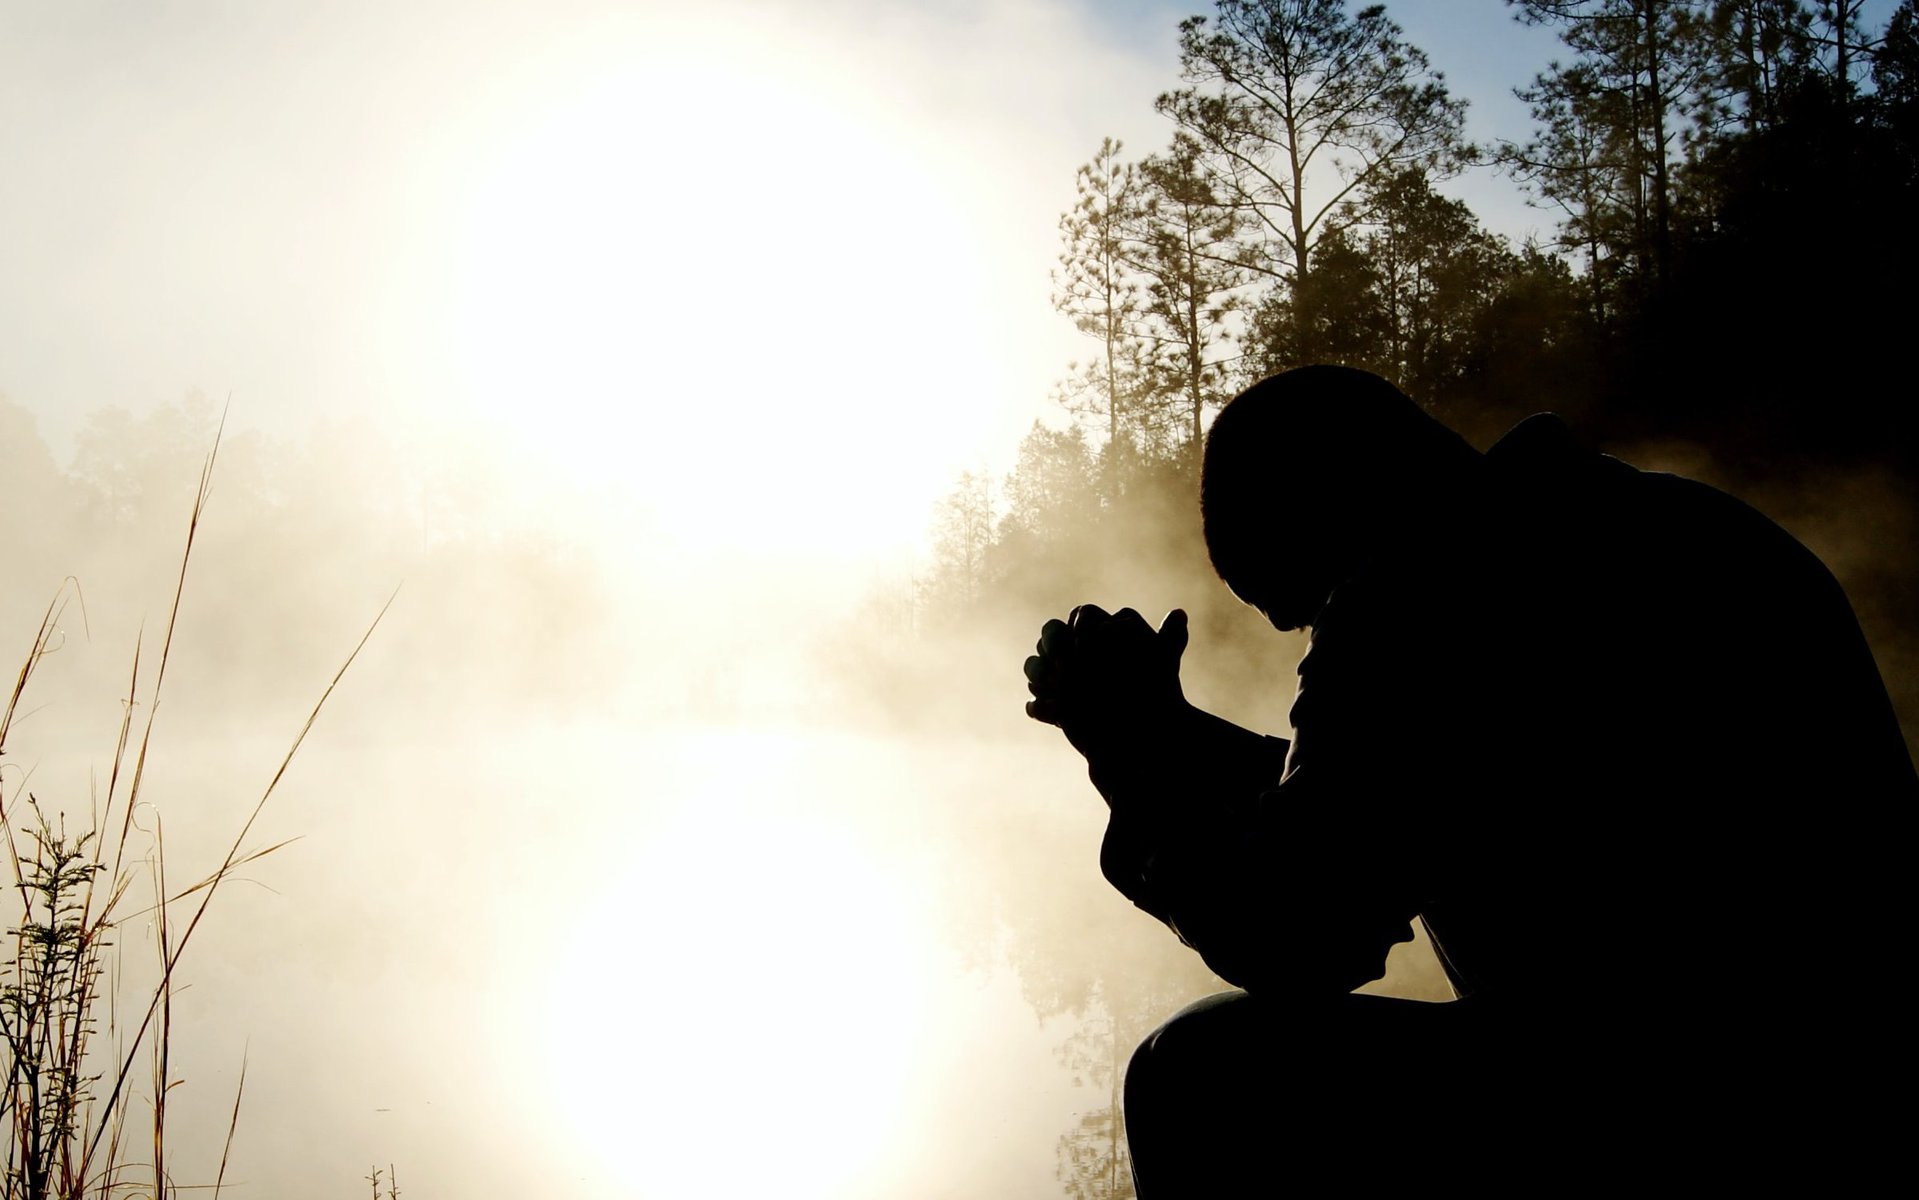 Foto: Unsplash.com
modlitba, člověk, půst